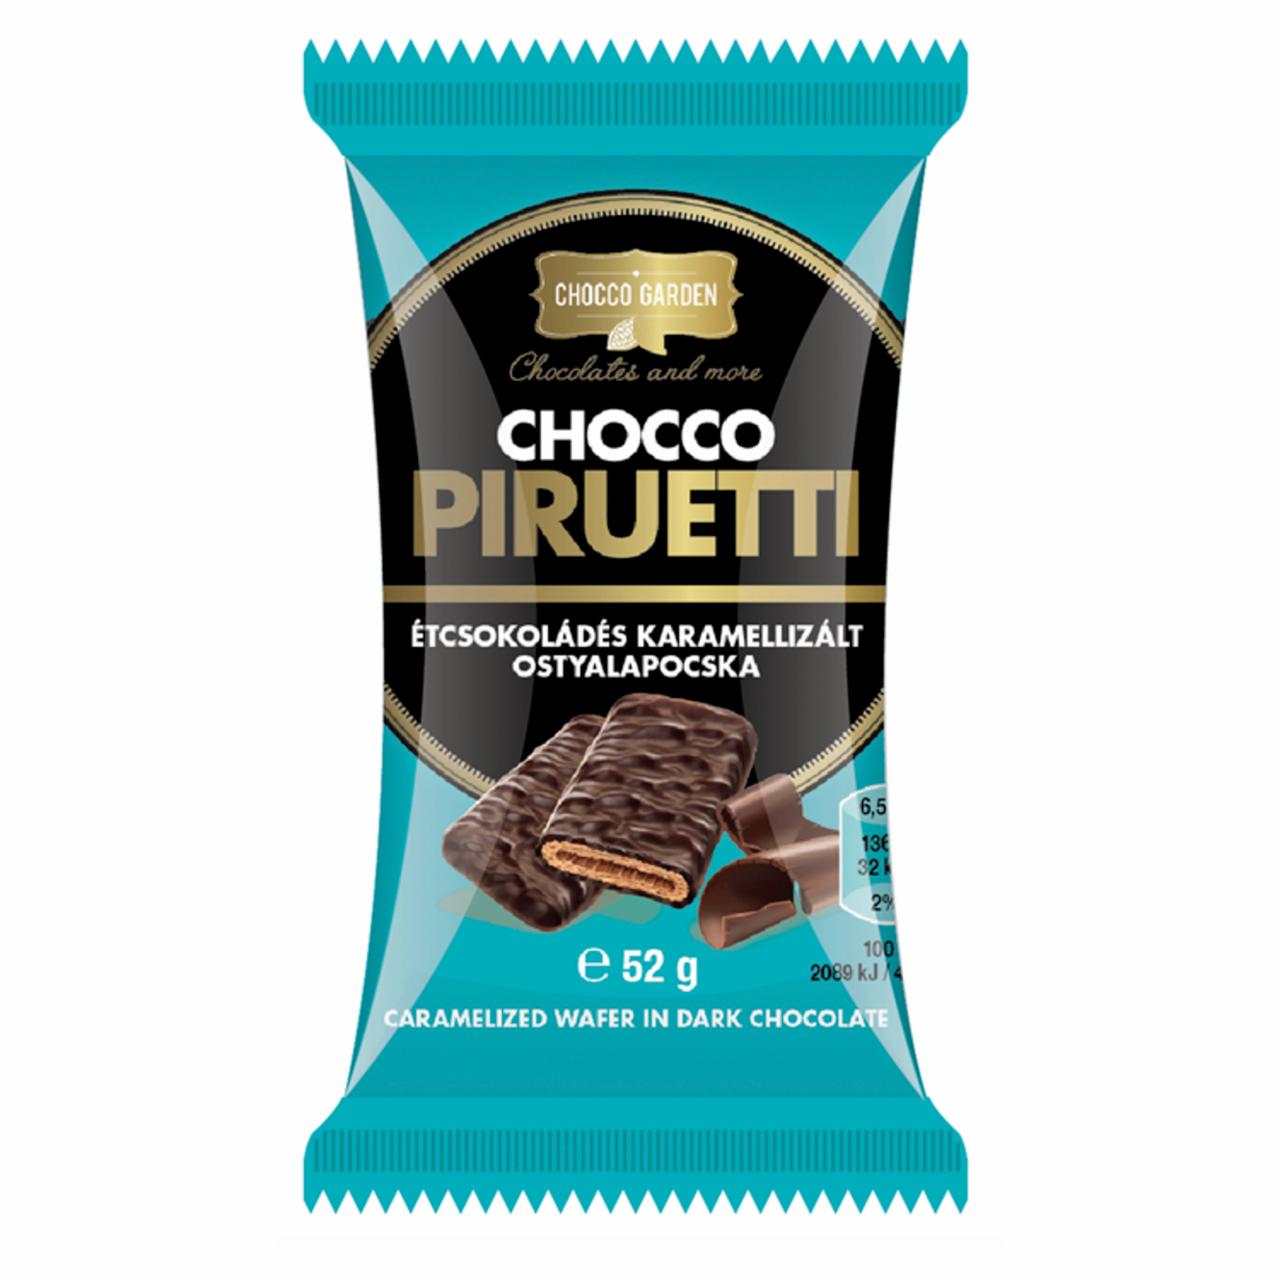 Képek - Chocco Garden Chocco Piruetti étcsokoládés karamellizált ostyalapocska 52 g